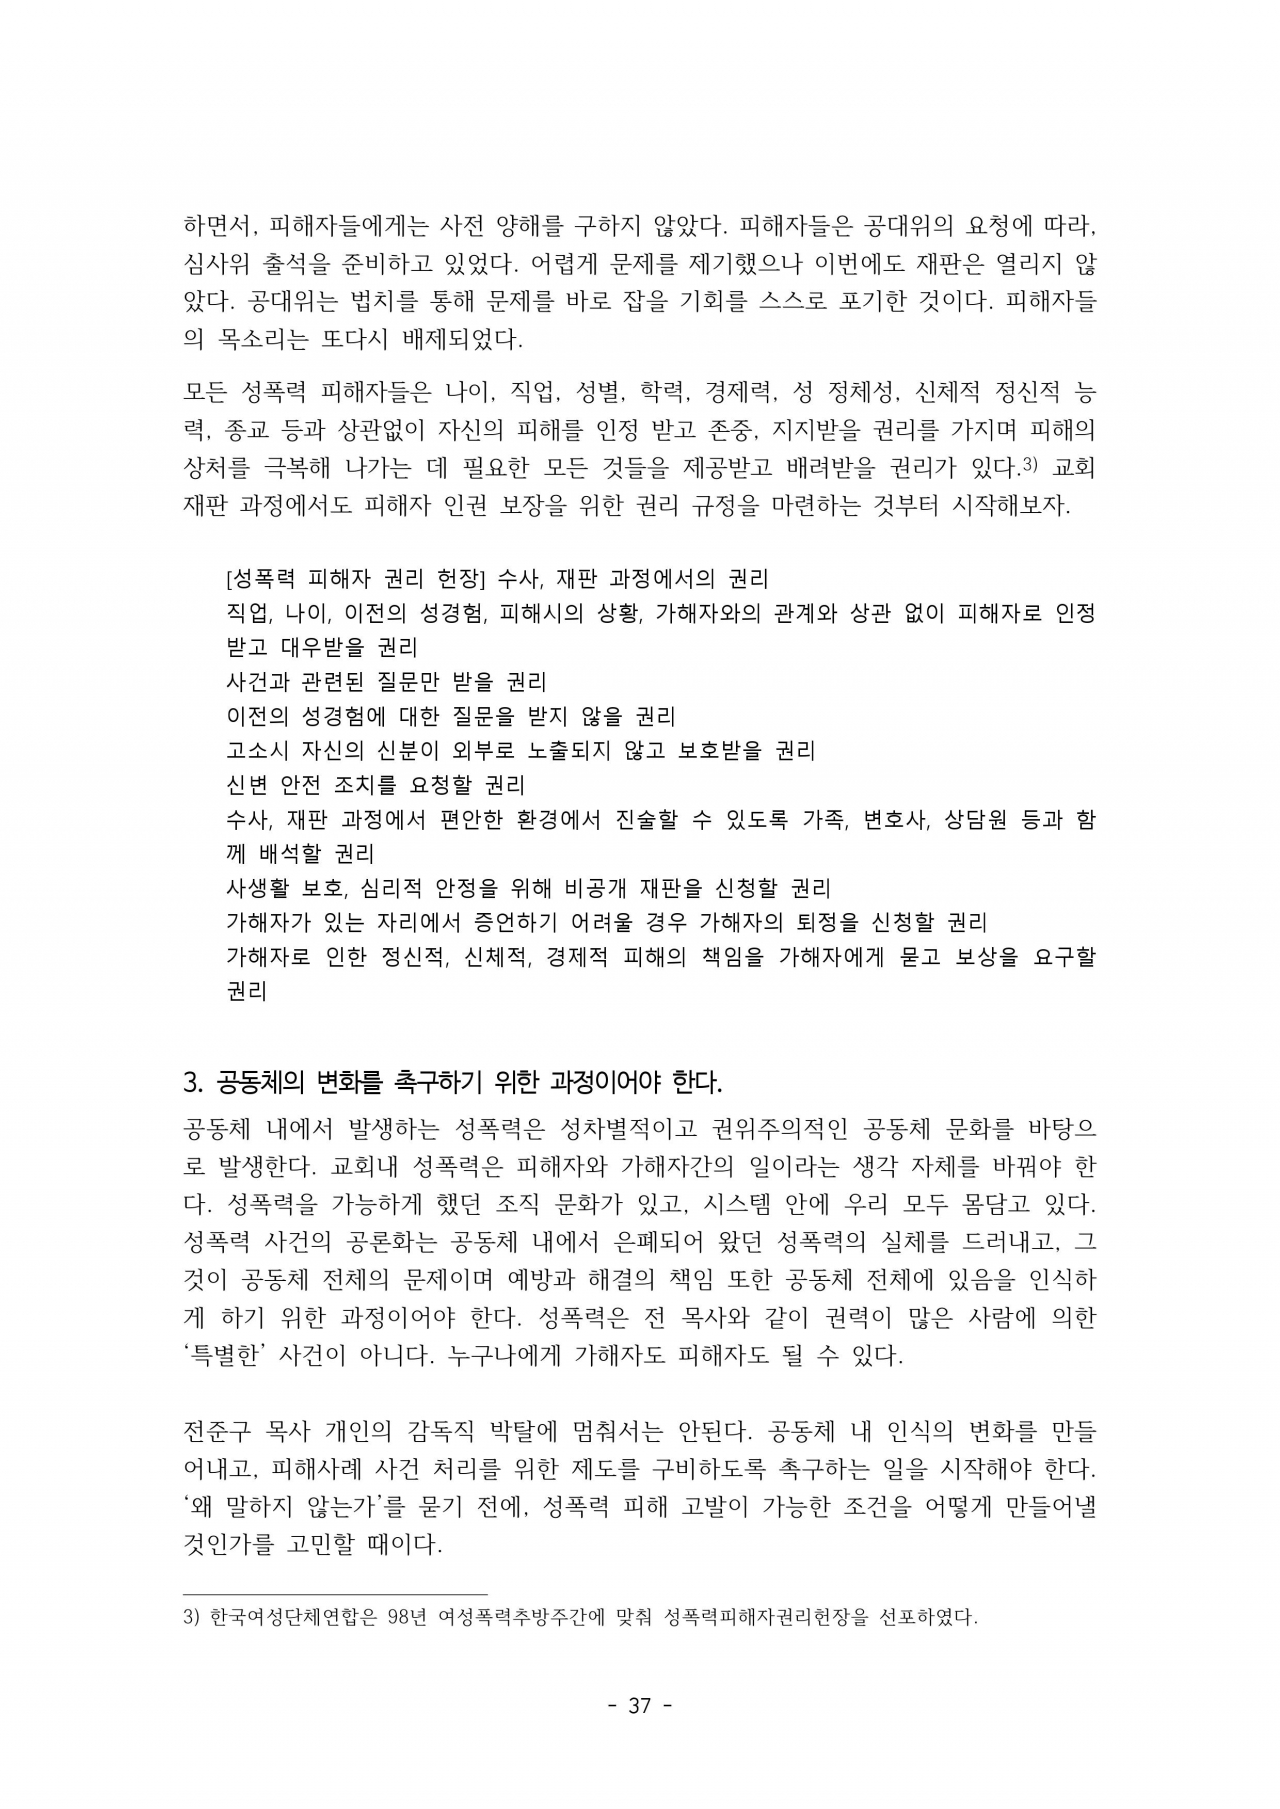 누가 피해자를 침묵하게 만들었나 - 김애희 기독교반성폭력센터장